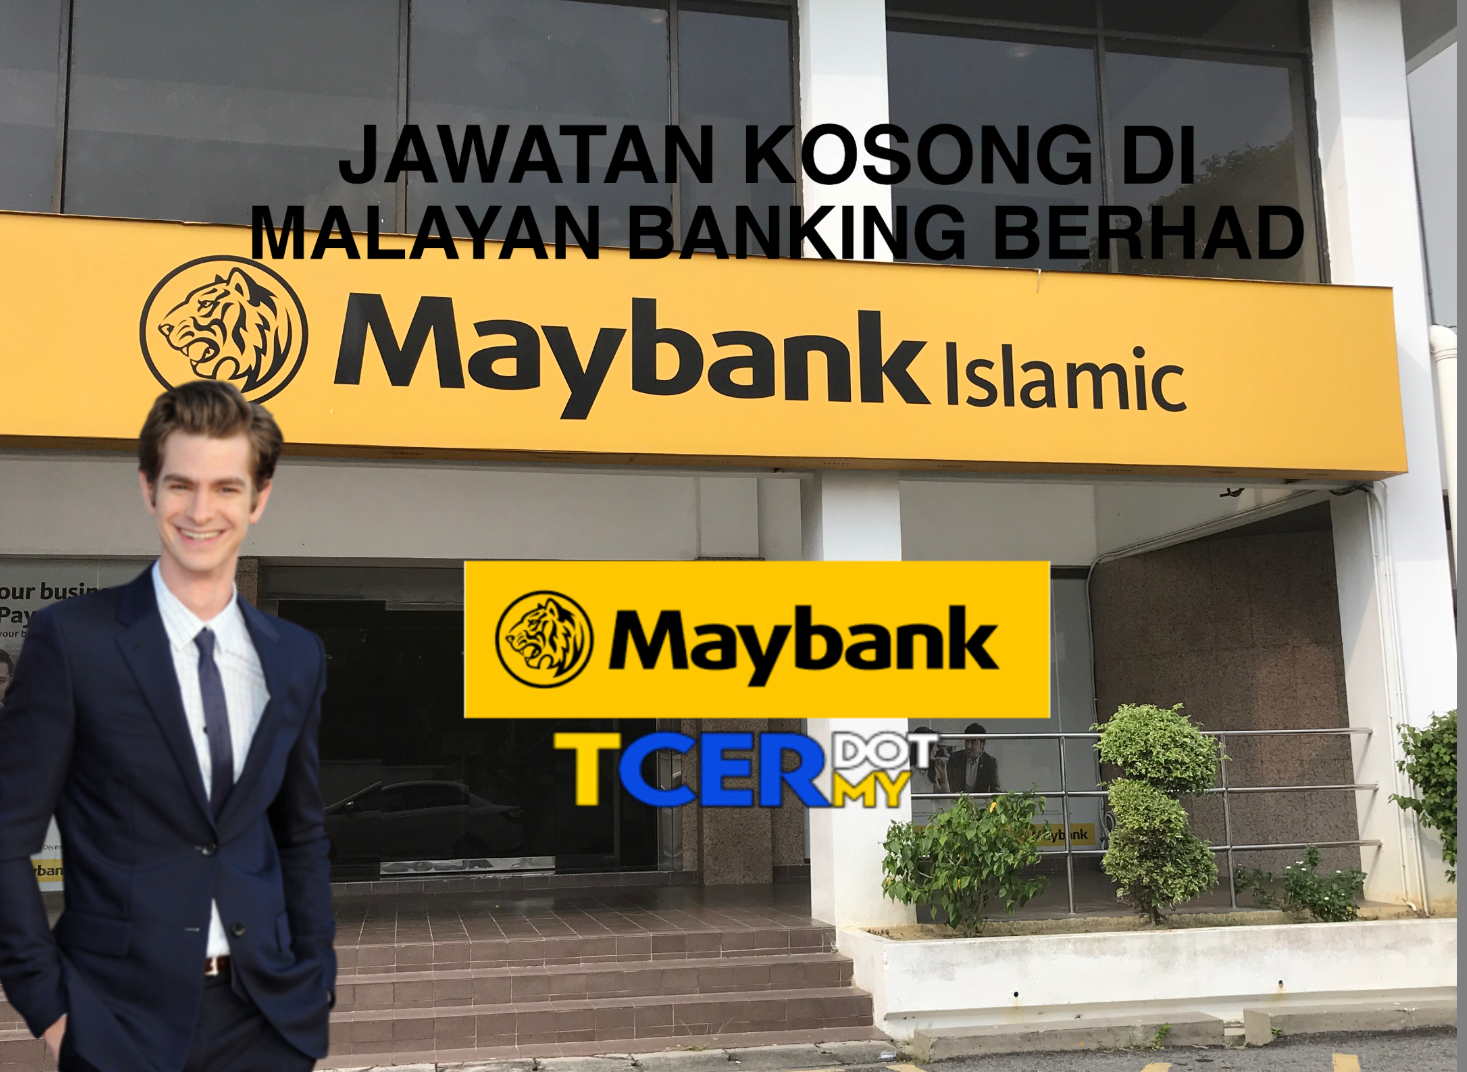 Jawatan Kosong Di Malayan Banking Berhad - TCER.MY